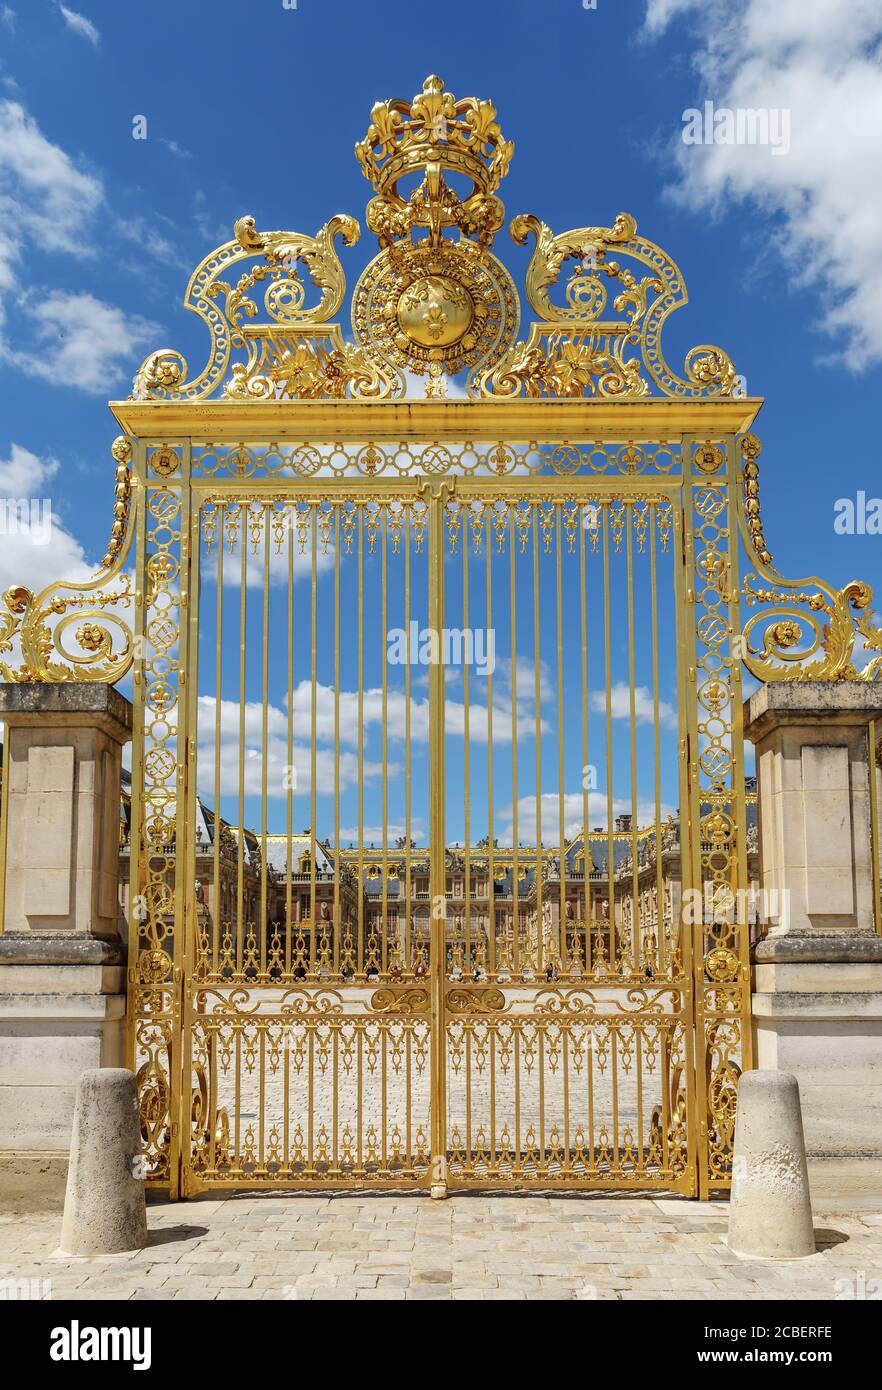 Porte d'or du Château de Versailles avec ciel bleu - Versailles, France Banque D'Images